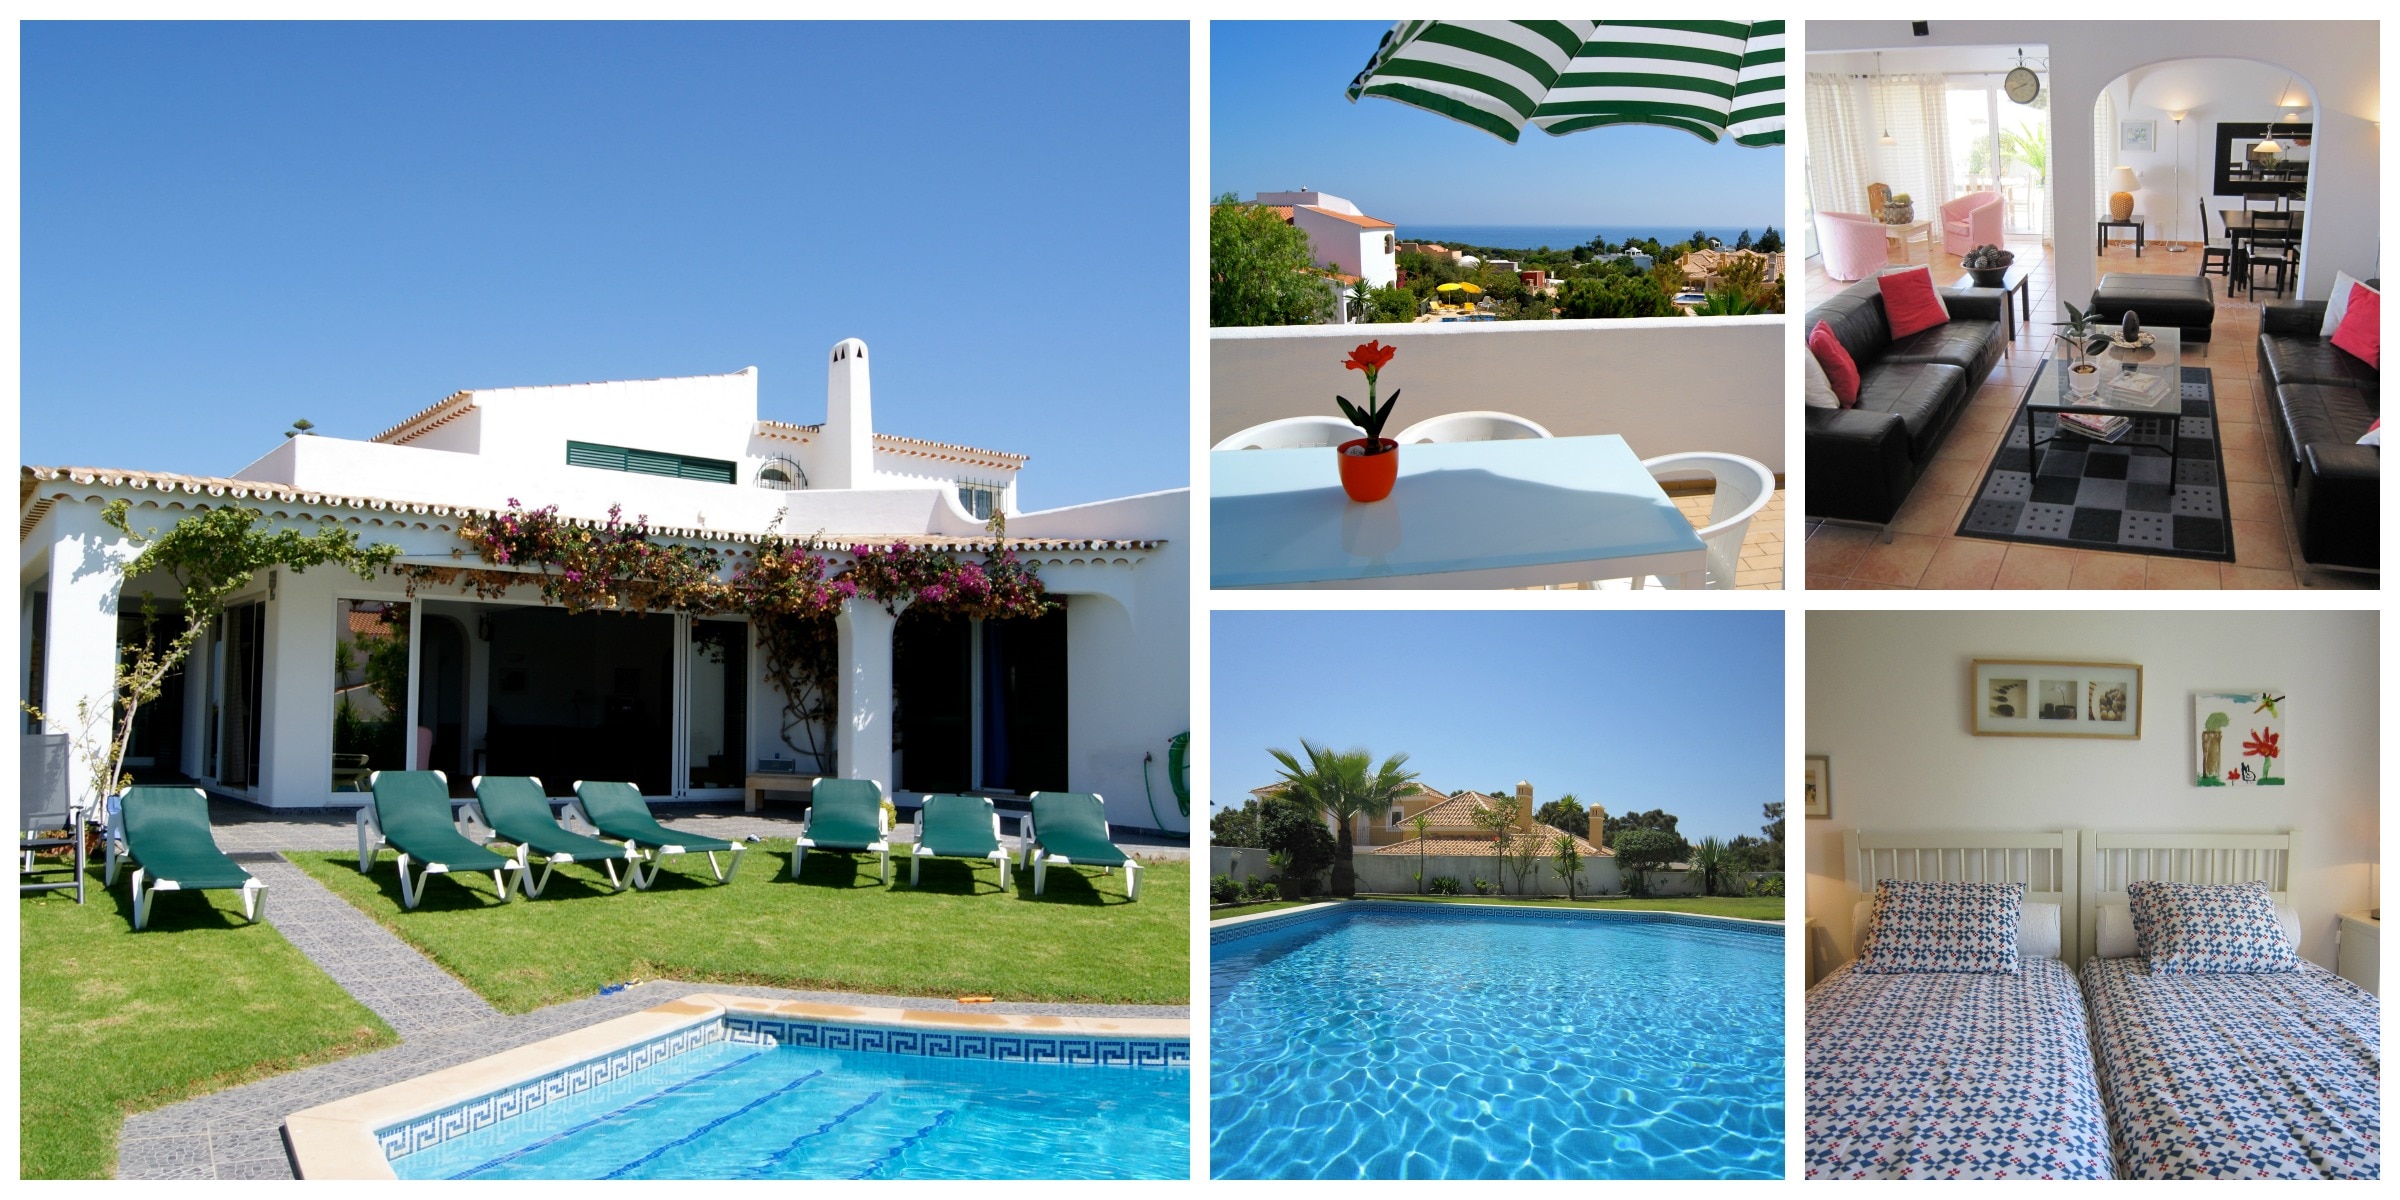 Plons jij binnenkort in het zwembad van deze villa aan de Algarve?